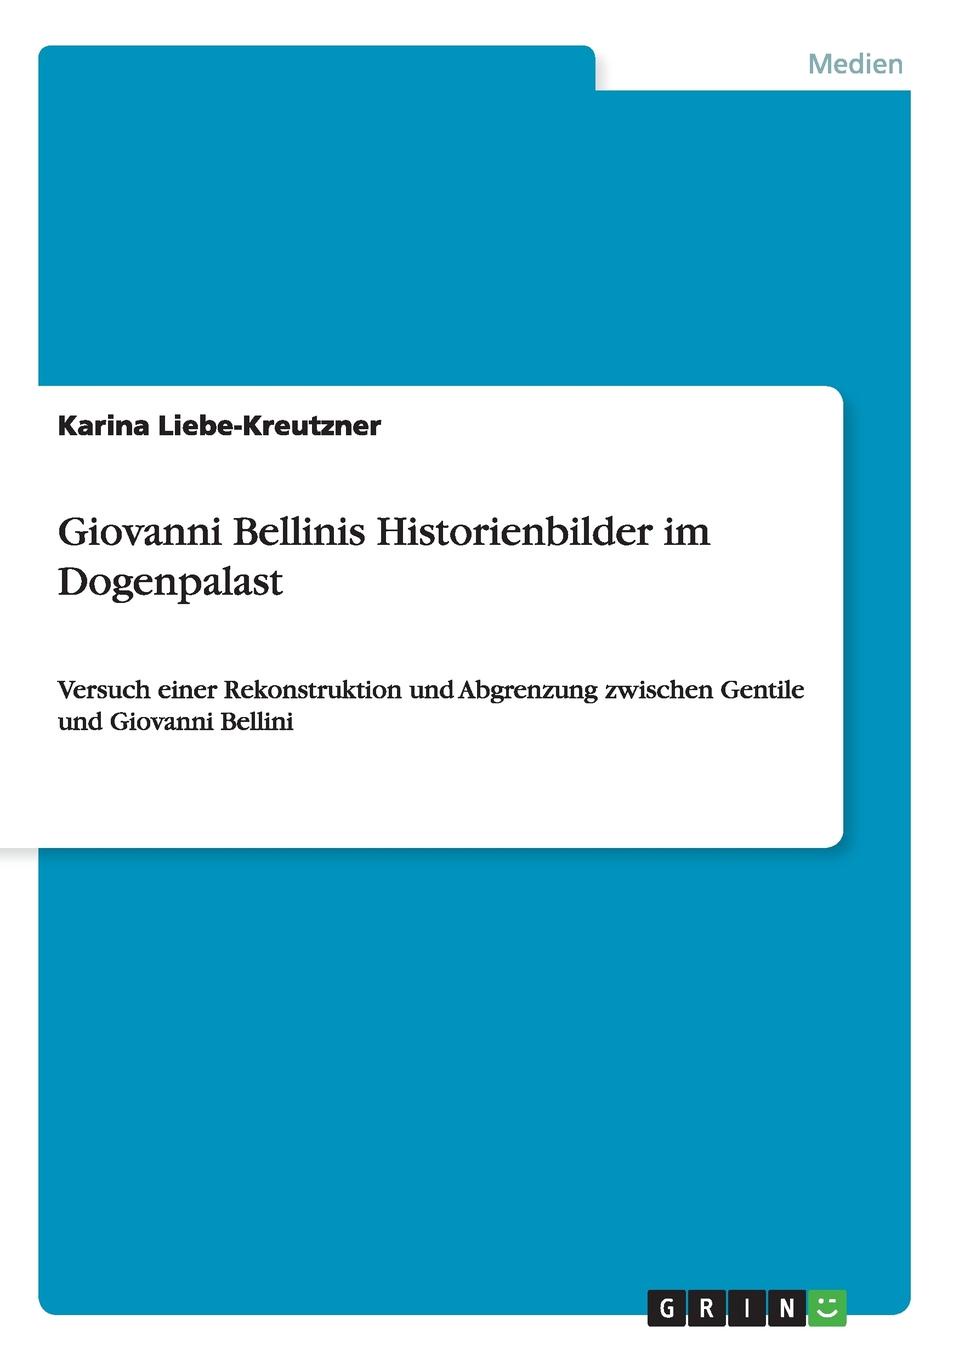 Karina Liebe-Kreutzner Giovanni Bellinis Historienbilder im Dogenpalast